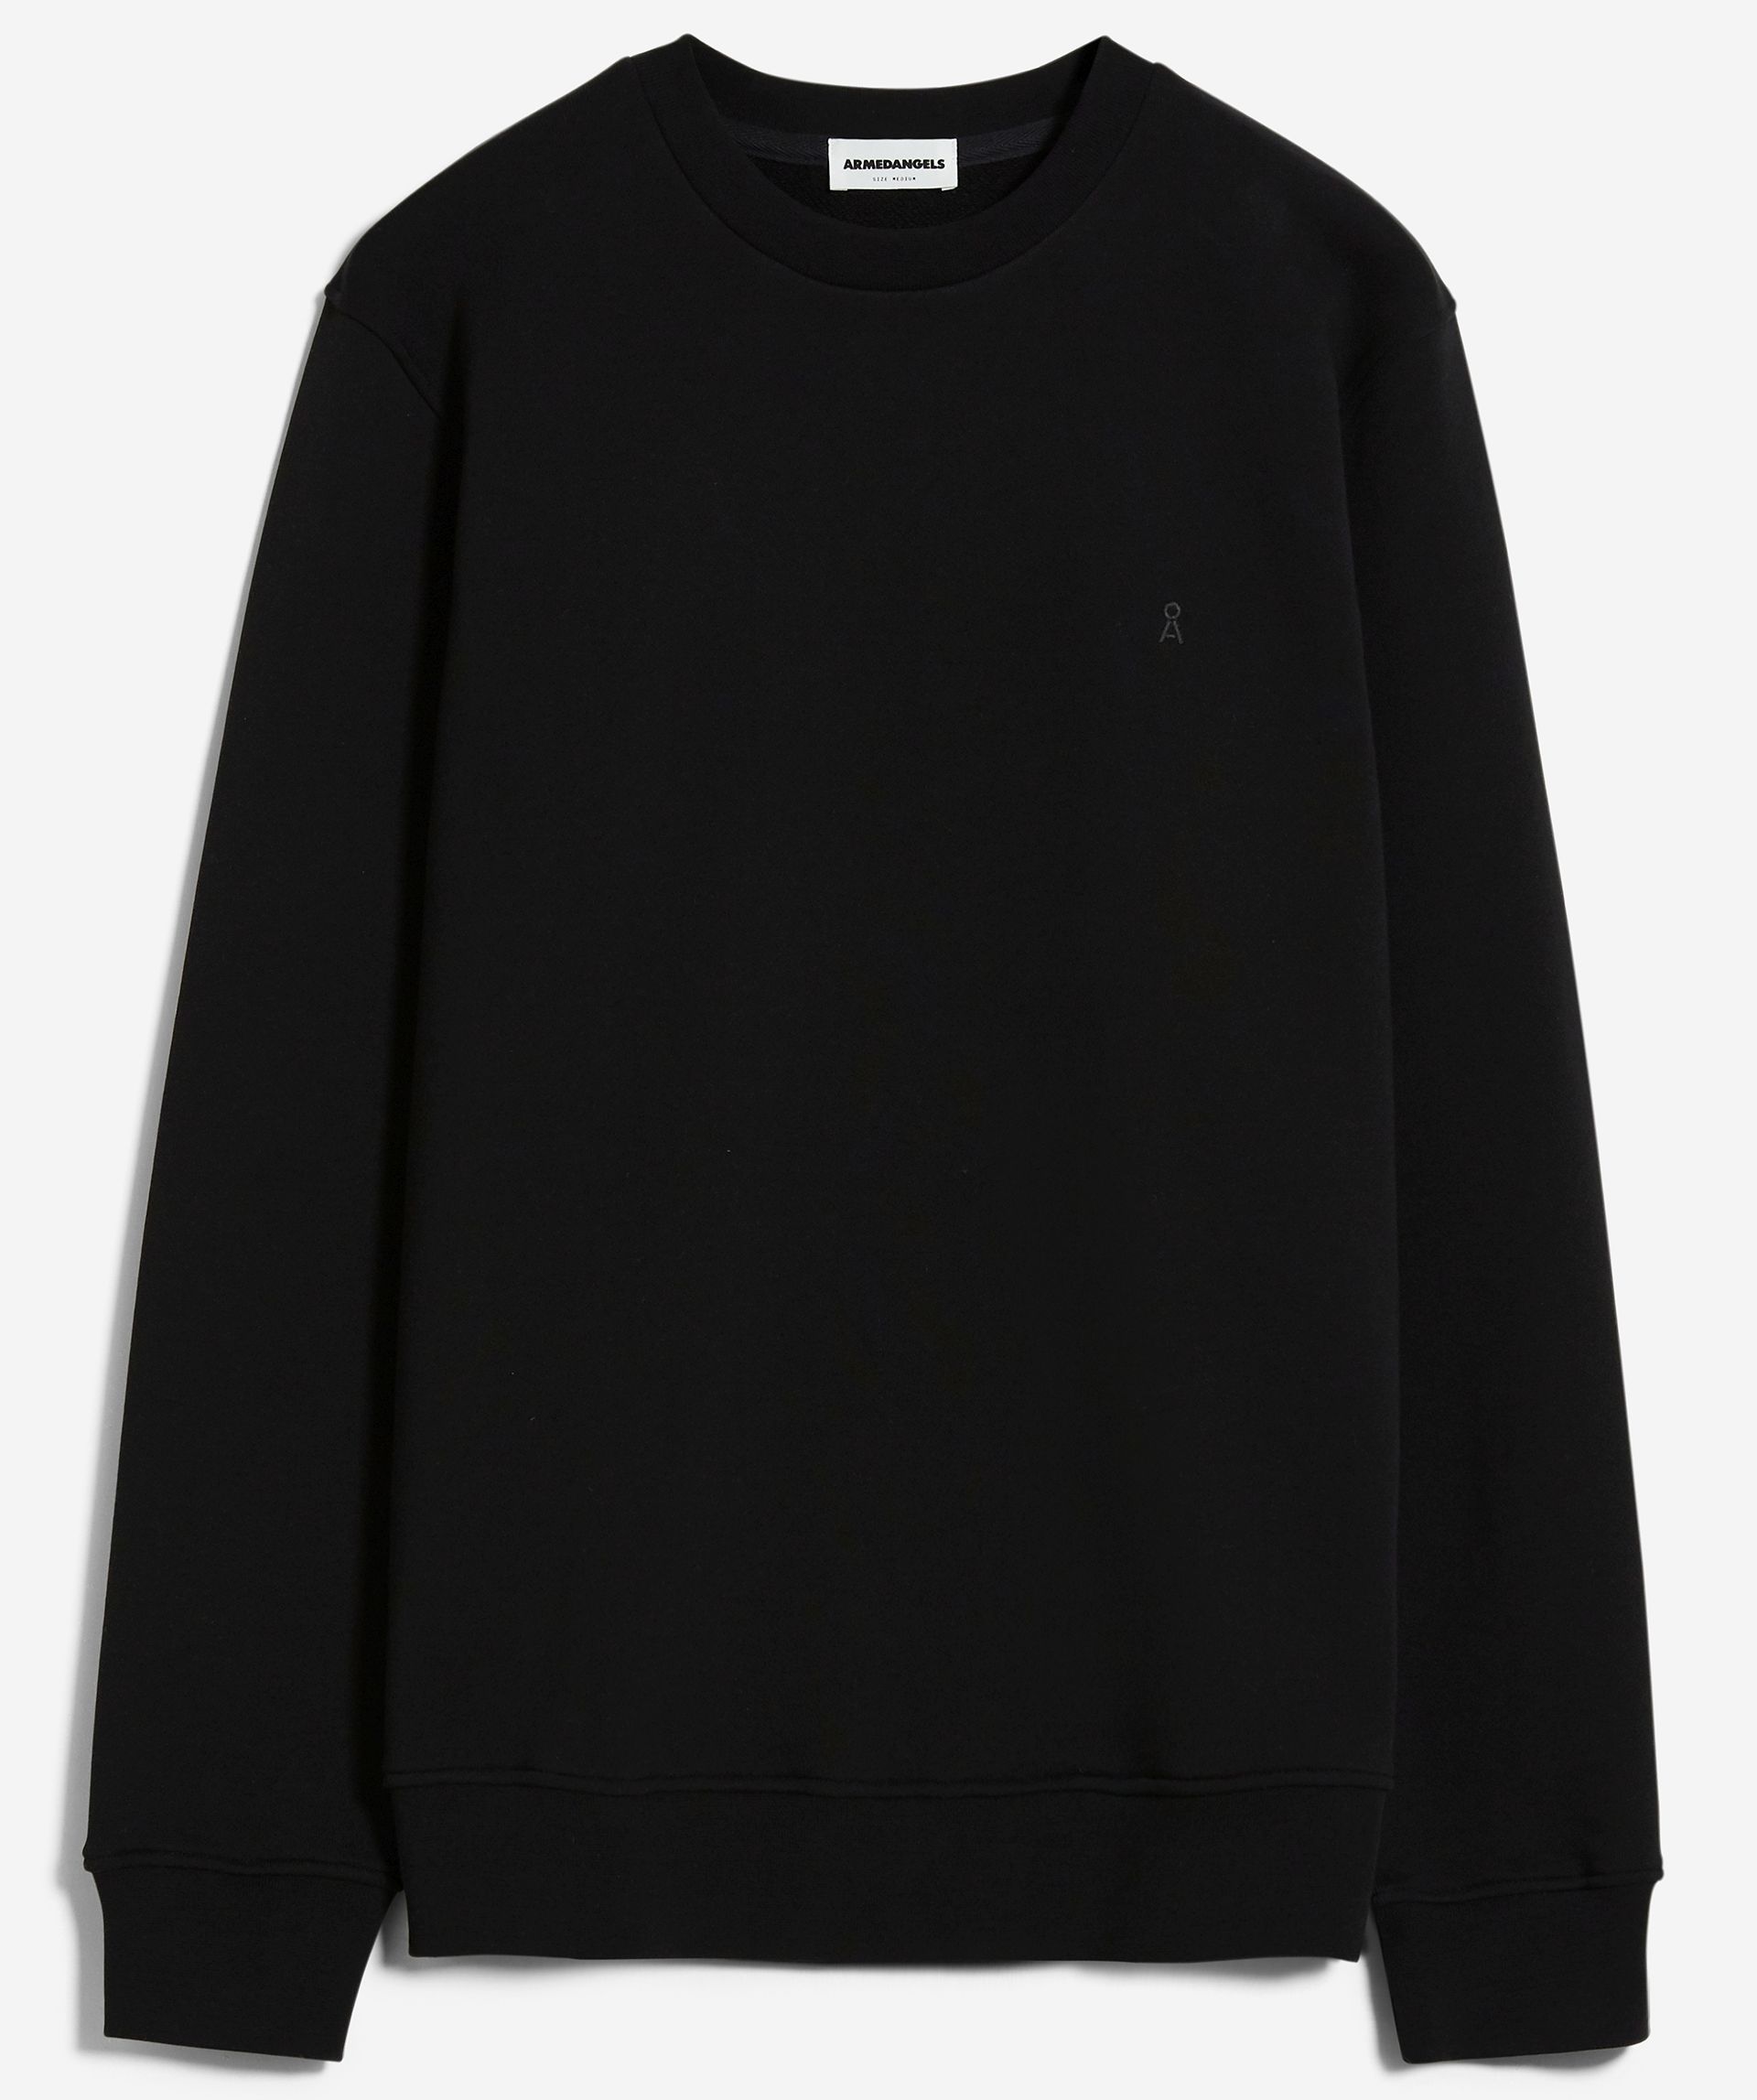 Sweatshirt BAARO COMFORT black